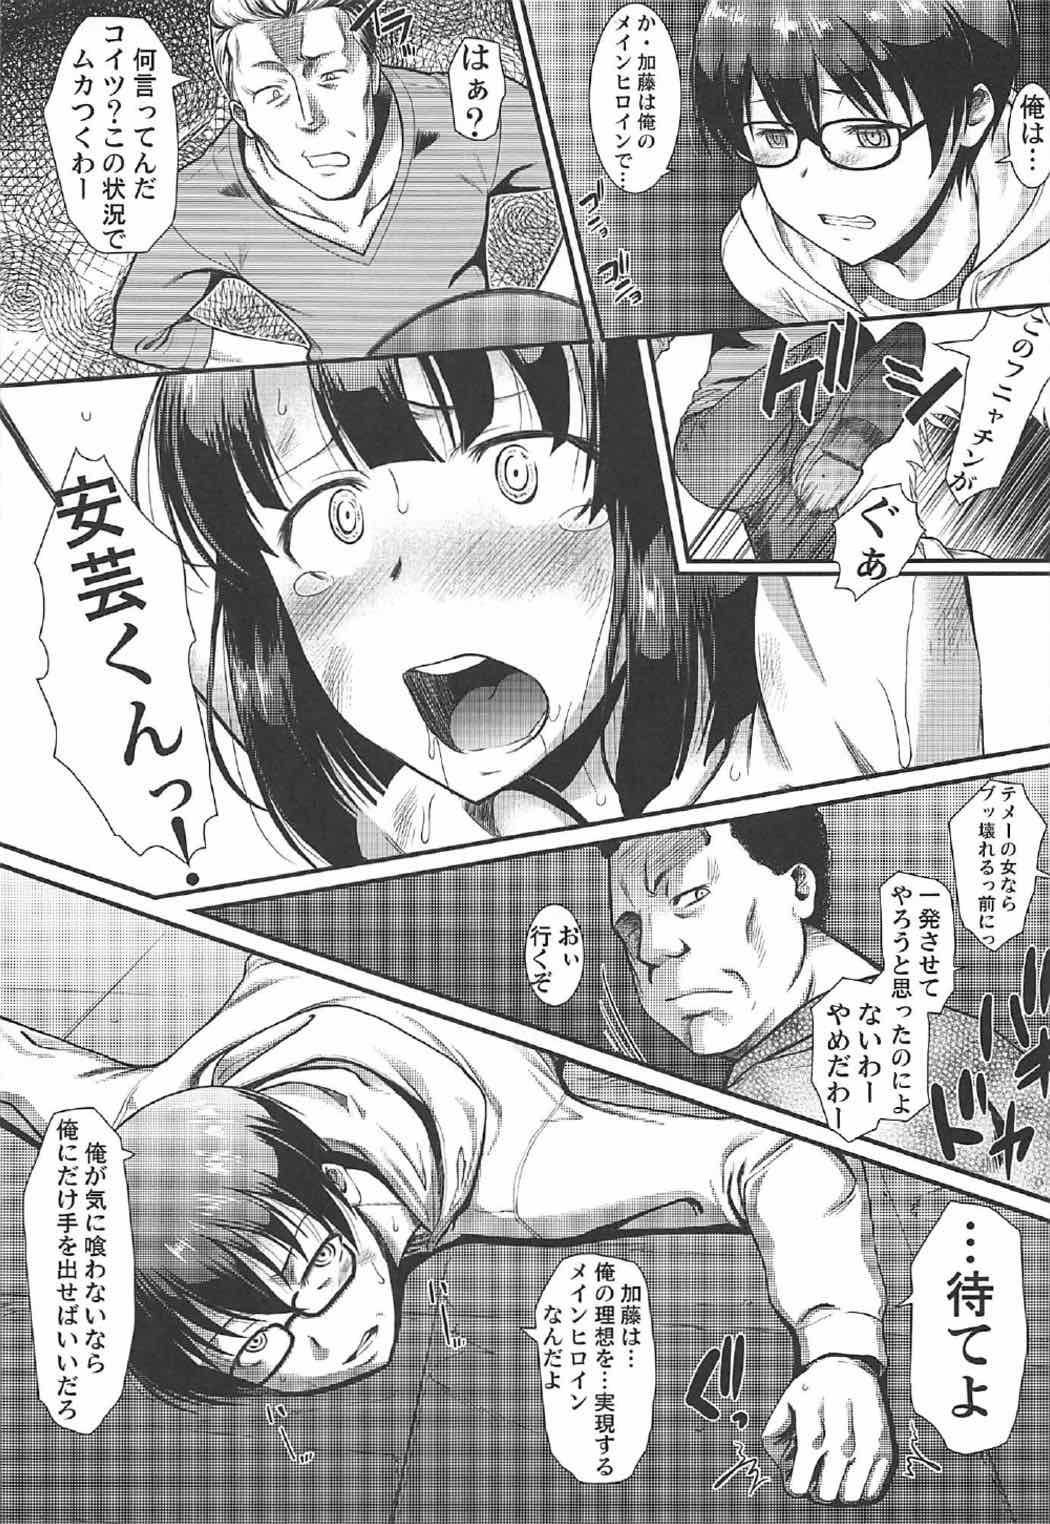 Tinytits Kimi wa Boku no Taiyou da 2 - Saenai heroine no sodatekata Foreskin - Page 8